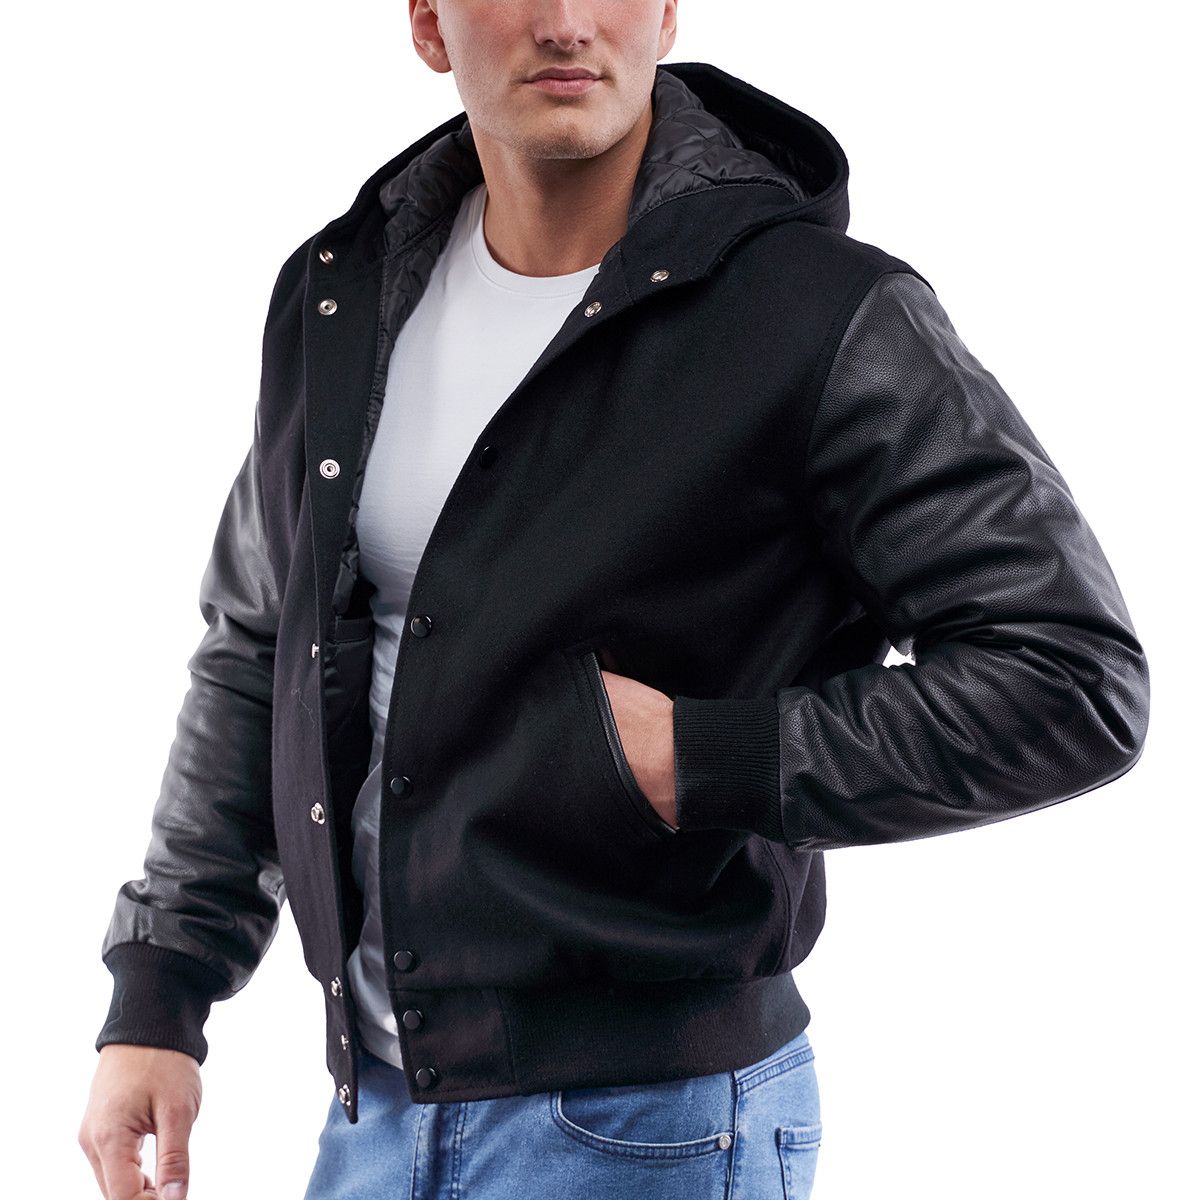 Black Wool Body & Black Leather Sleeves Hoodie Letterman Jacket